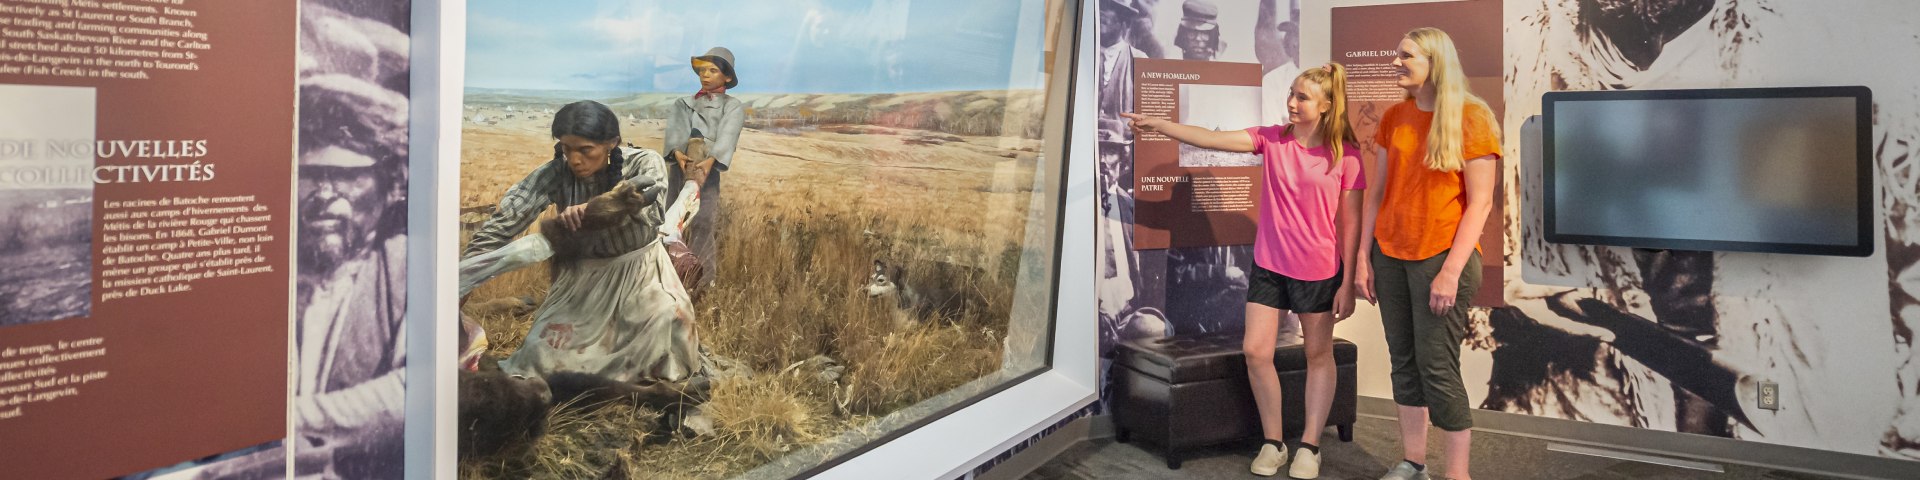 Deux visiteuses debout au musée regardent le diorama d’abattage de bisons.